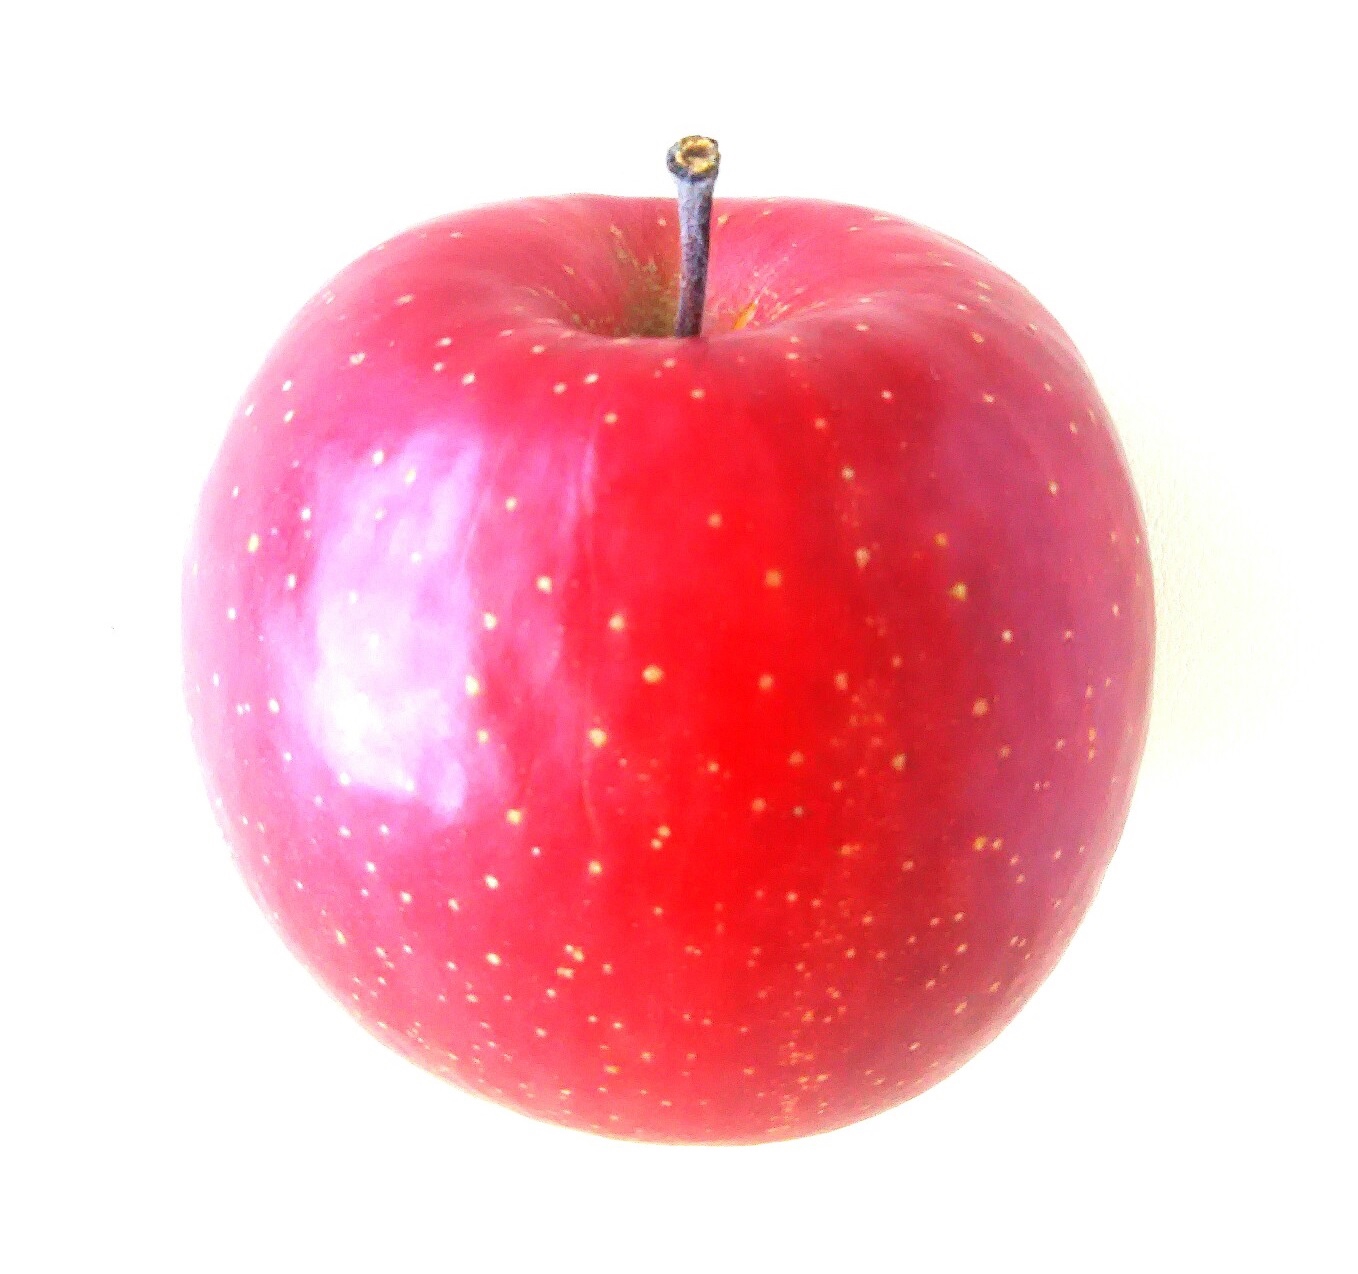 赤いリンゴを選んだ人は 色とストレスの関係